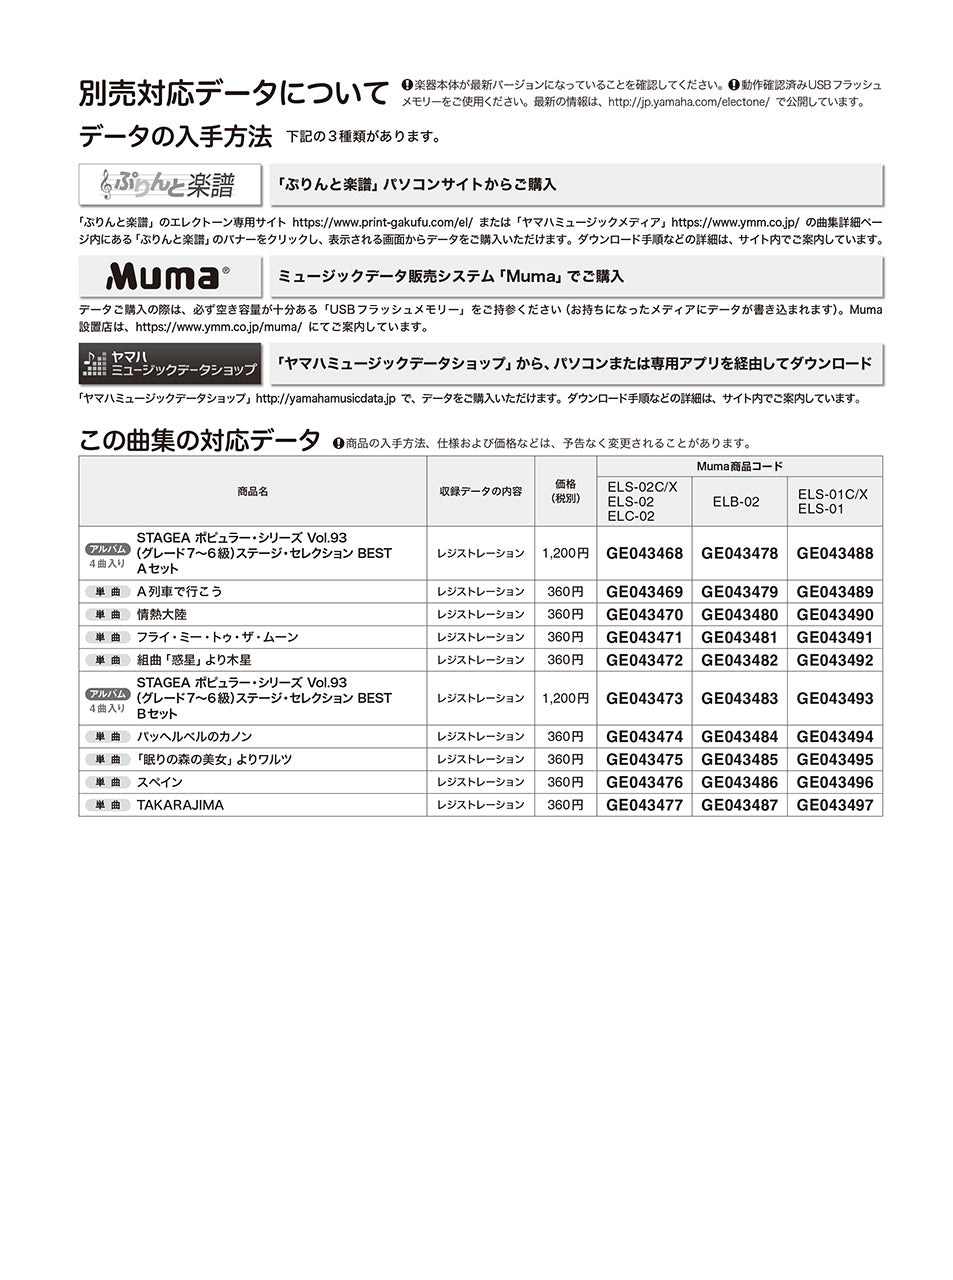 STAGEA ポピュラー 7～6級 Vol.93 ステージ・セレクション BEST_1